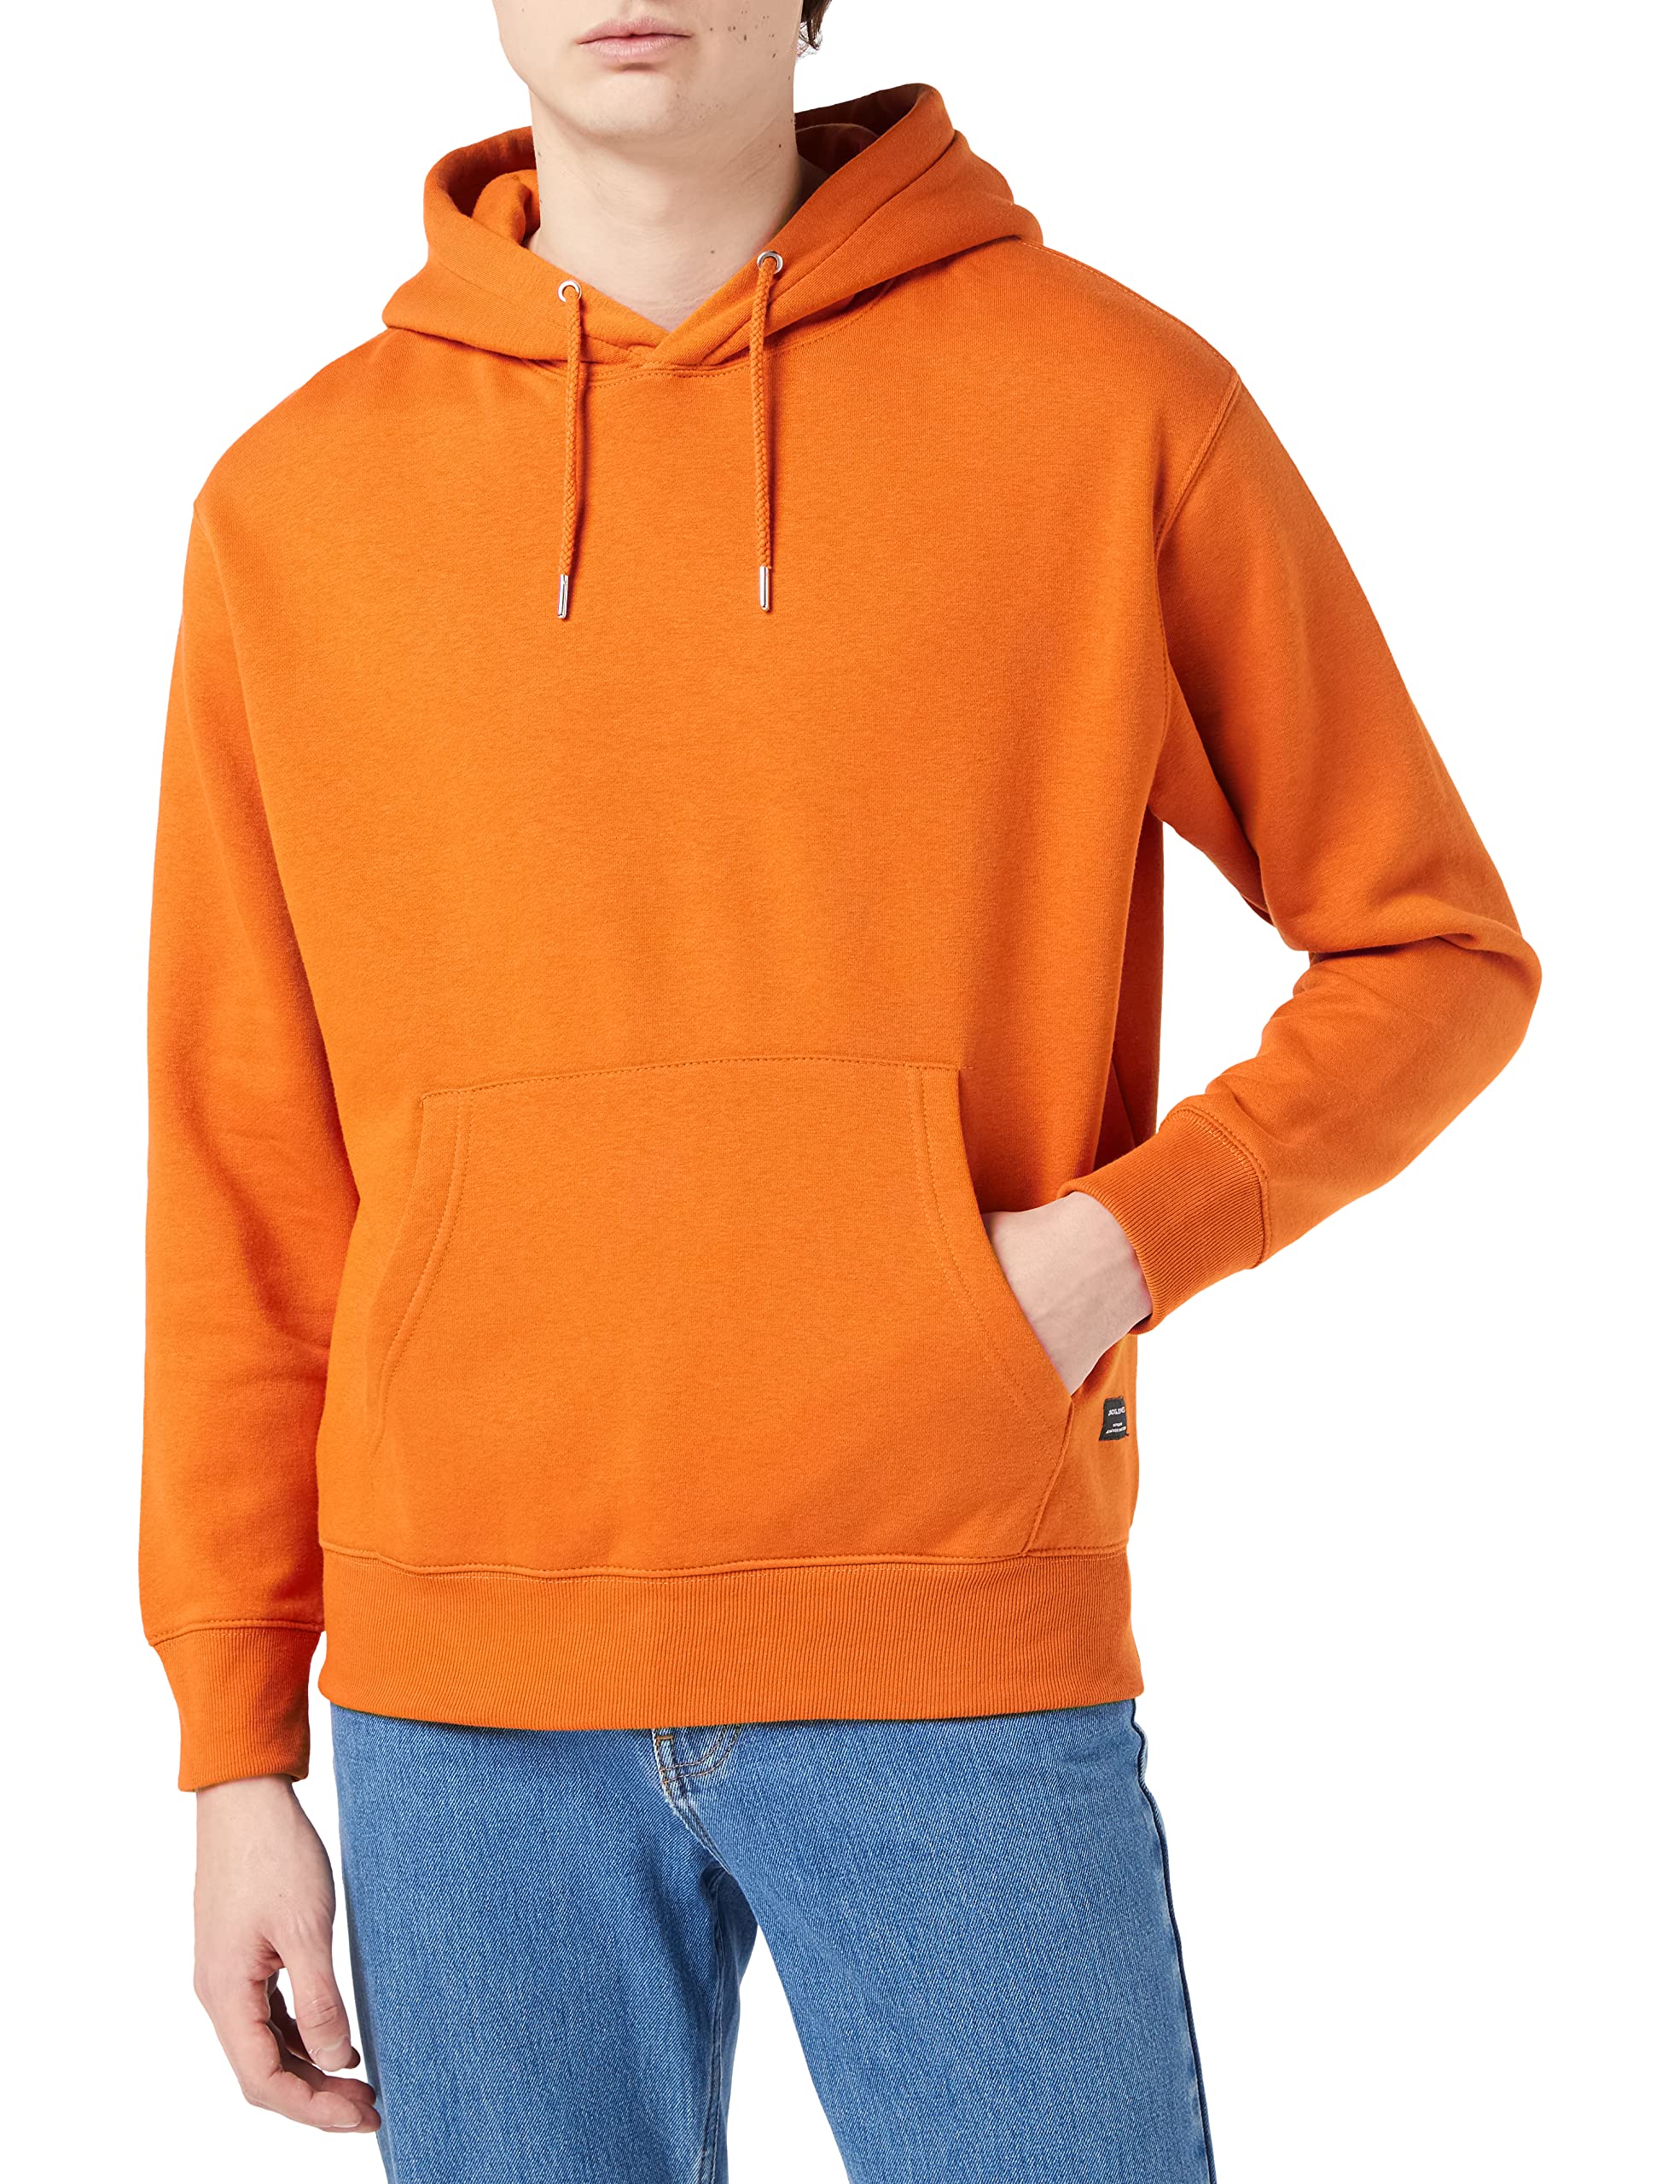 Herren Jack & Jones Basic Hoodie Soft Sweat Hood Jumper Kapuzen Pullover, Farben:Orange, Größe Pullover:M